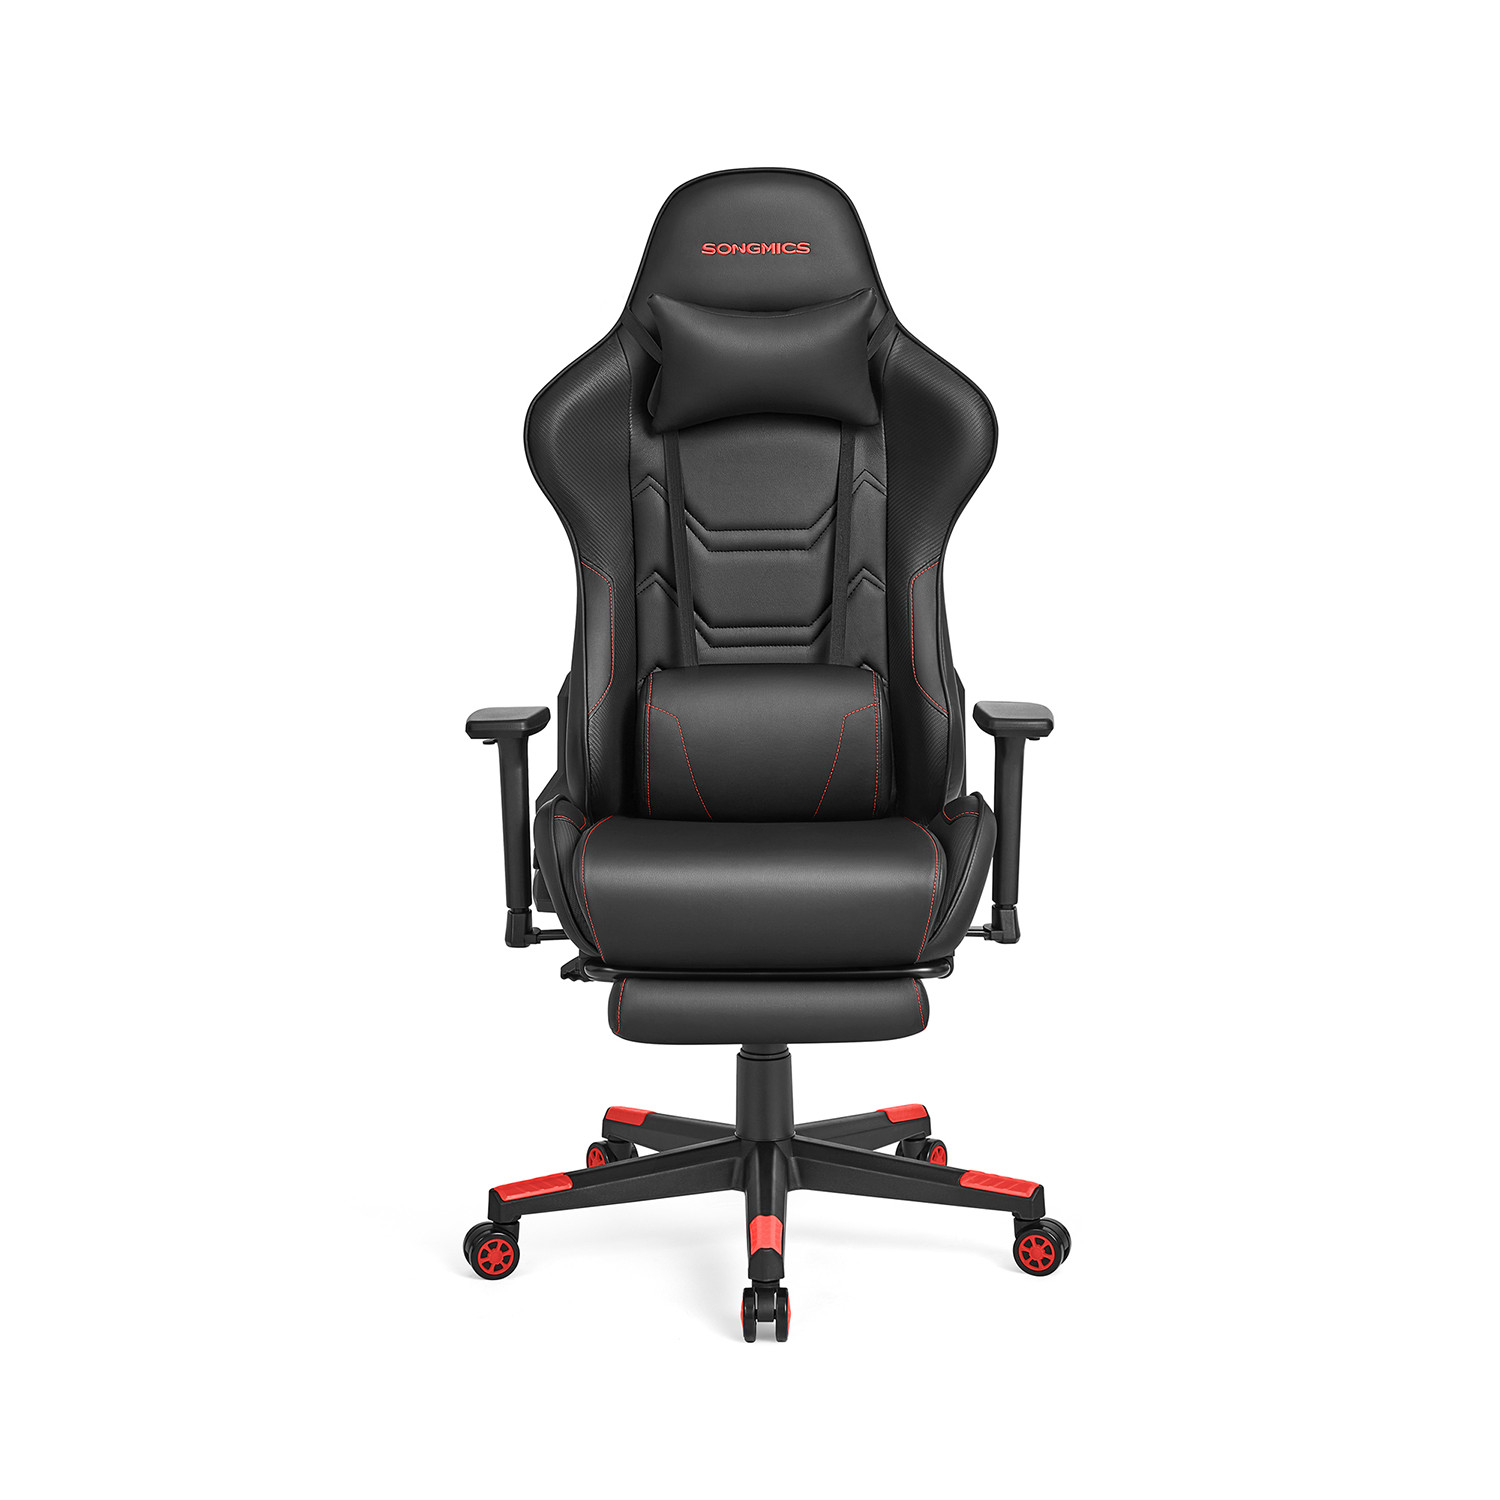 Kancelárska stolička RCG070B01